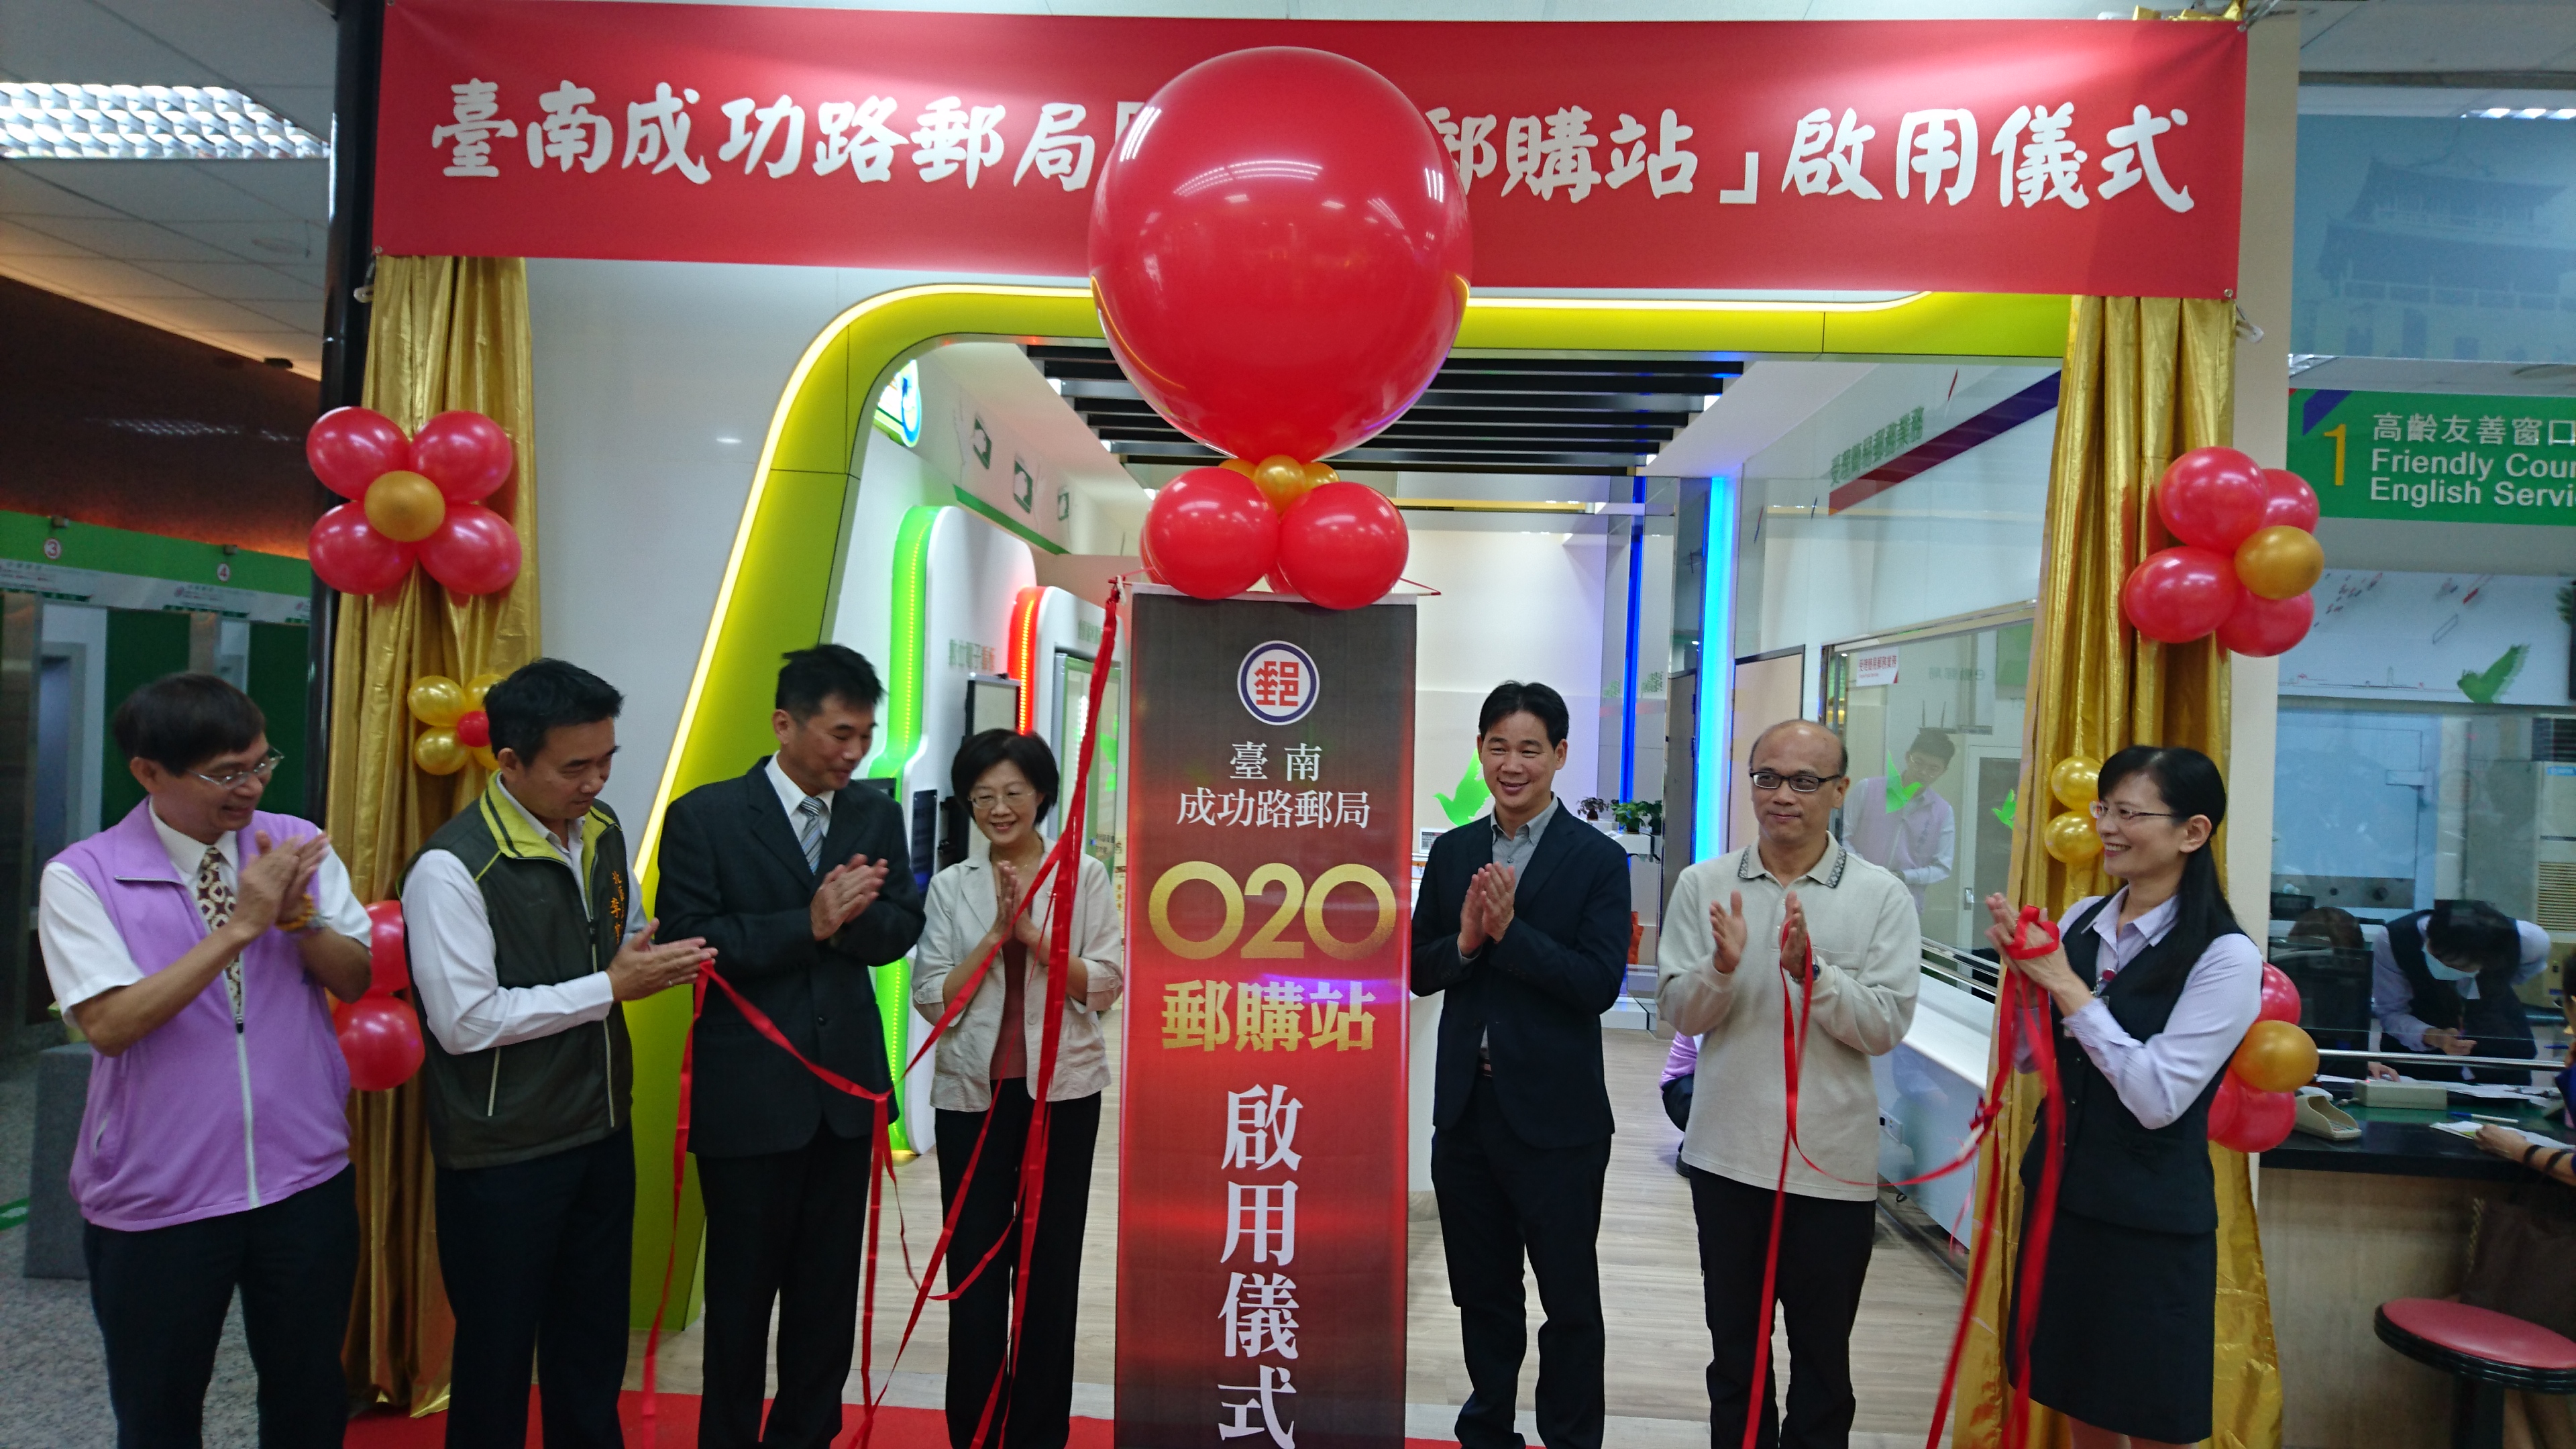 臺南郵局舉辦「o2o郵購站」啟用儀式 